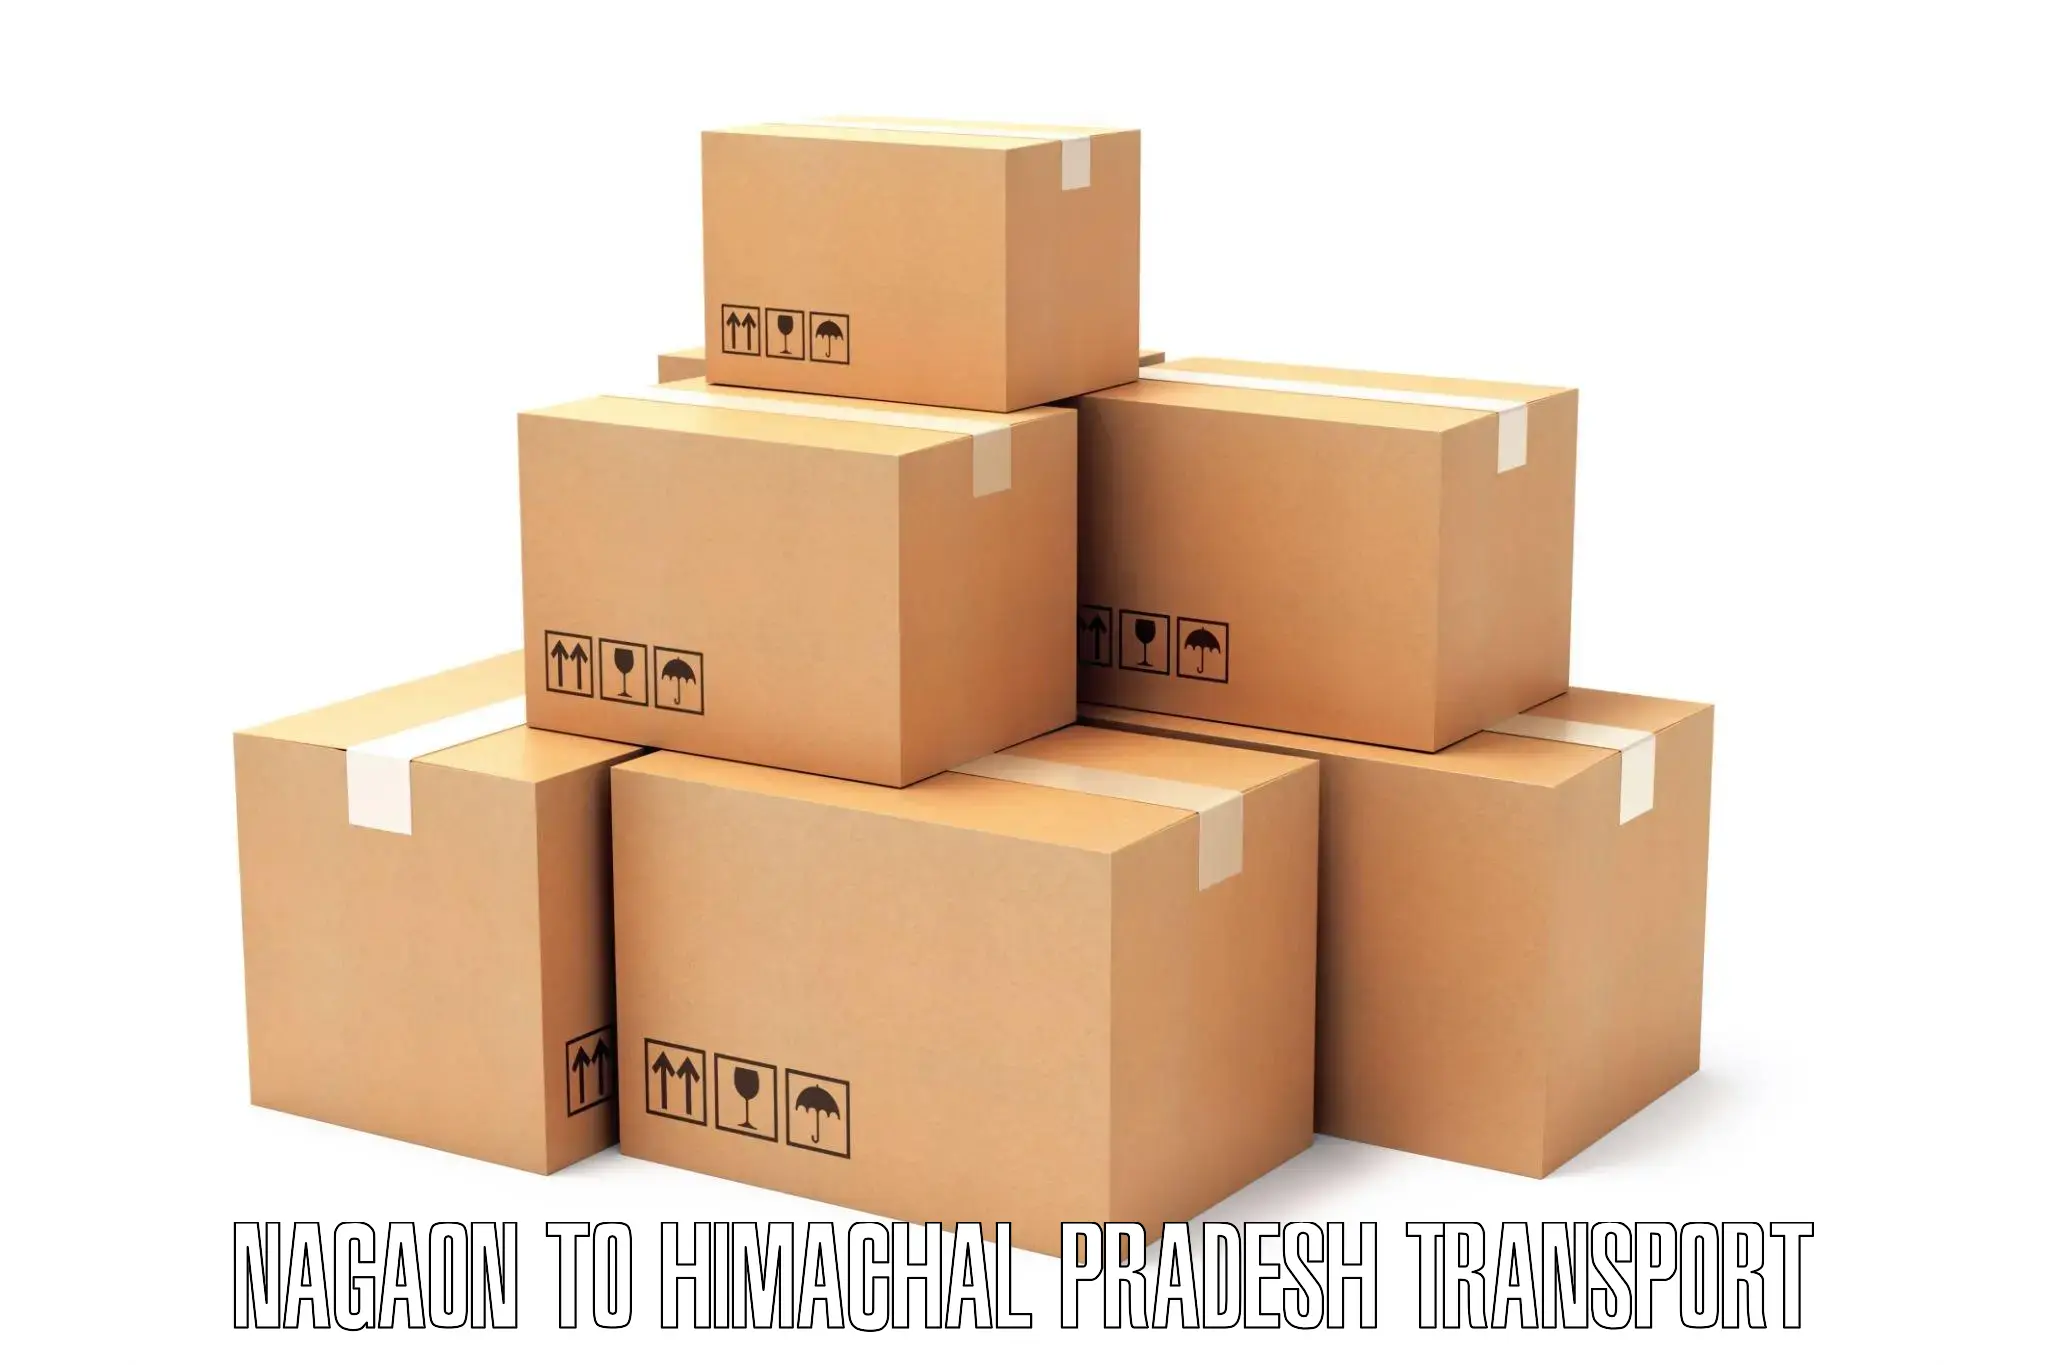 Daily parcel service transport Nagaon to Sandhol